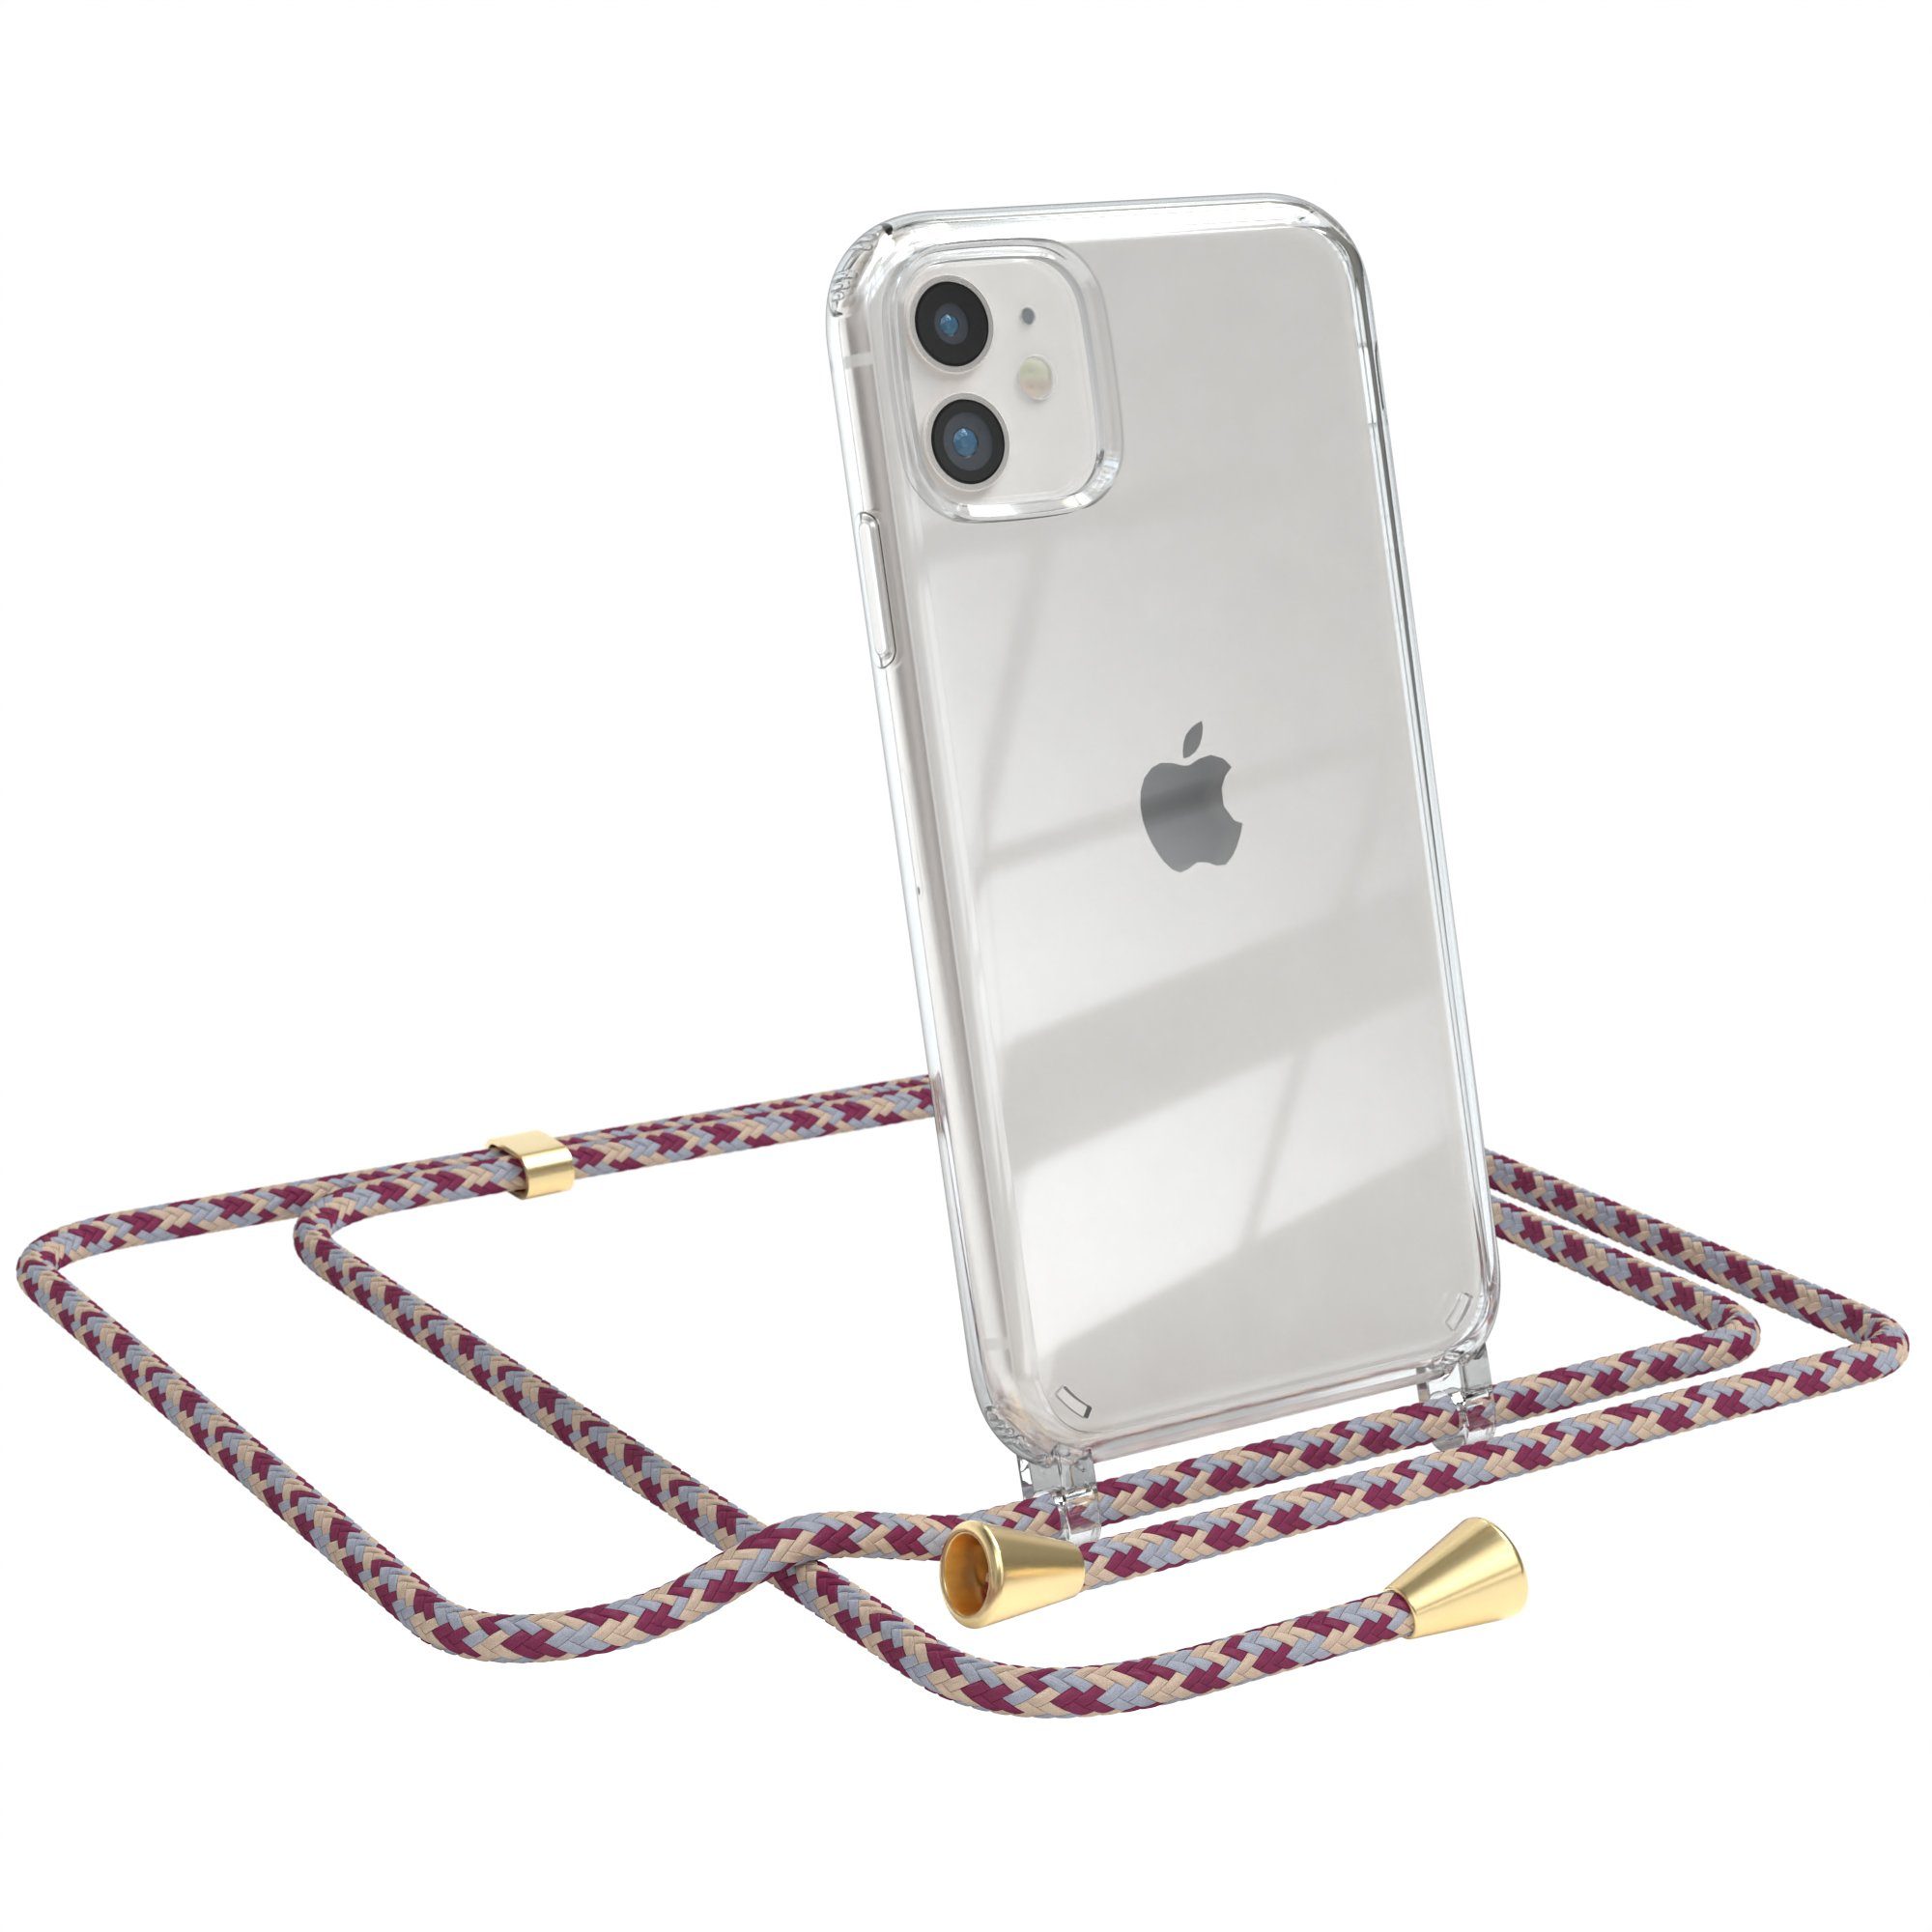 EAZY CASE Handykette Hülle mit Kette für Apple iPhone 11 6,1 Zoll, Hülle mit Umhängeband Bumper Case Hülle mit Band Rot Beige Camouflage